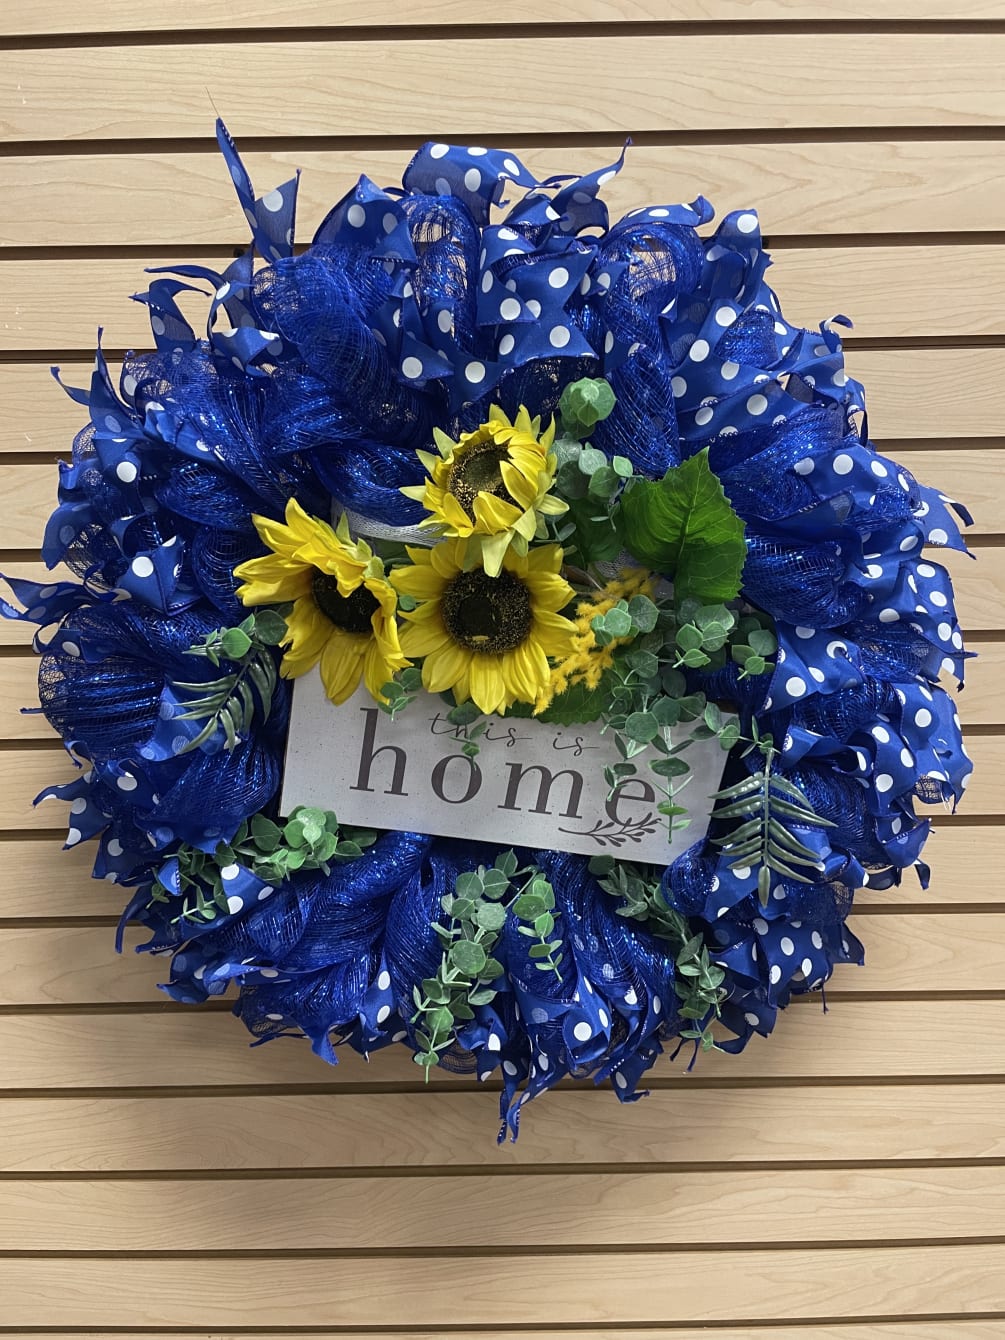 A blue wreath